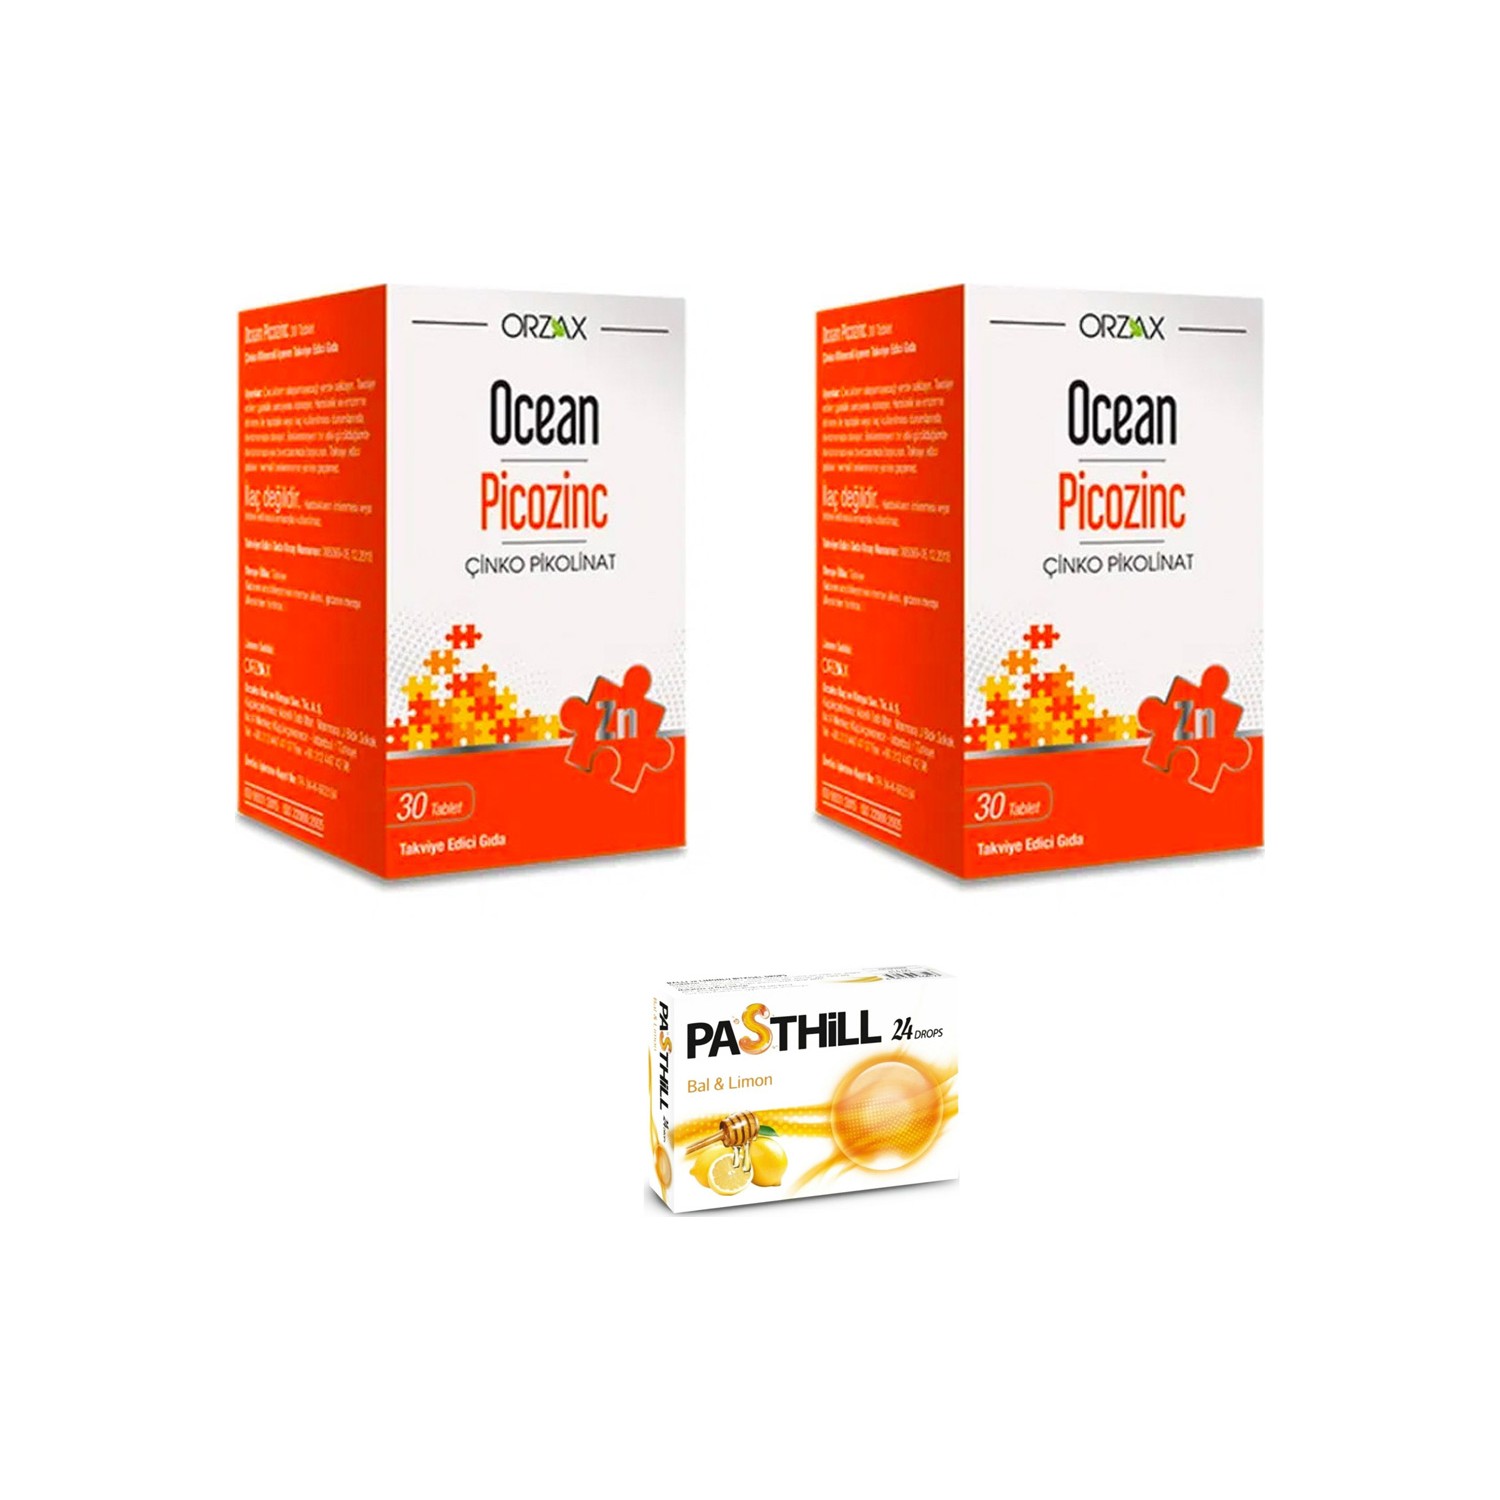 Пищевая добавка Orzax Ocean Picozinc Cinko Picolinate, 2 упаковки по 30 таблеток + Пастилки Pasthill со вкусом меда и лимона биодобавка пиколинат цинка zinc picolinate 100 таблеток